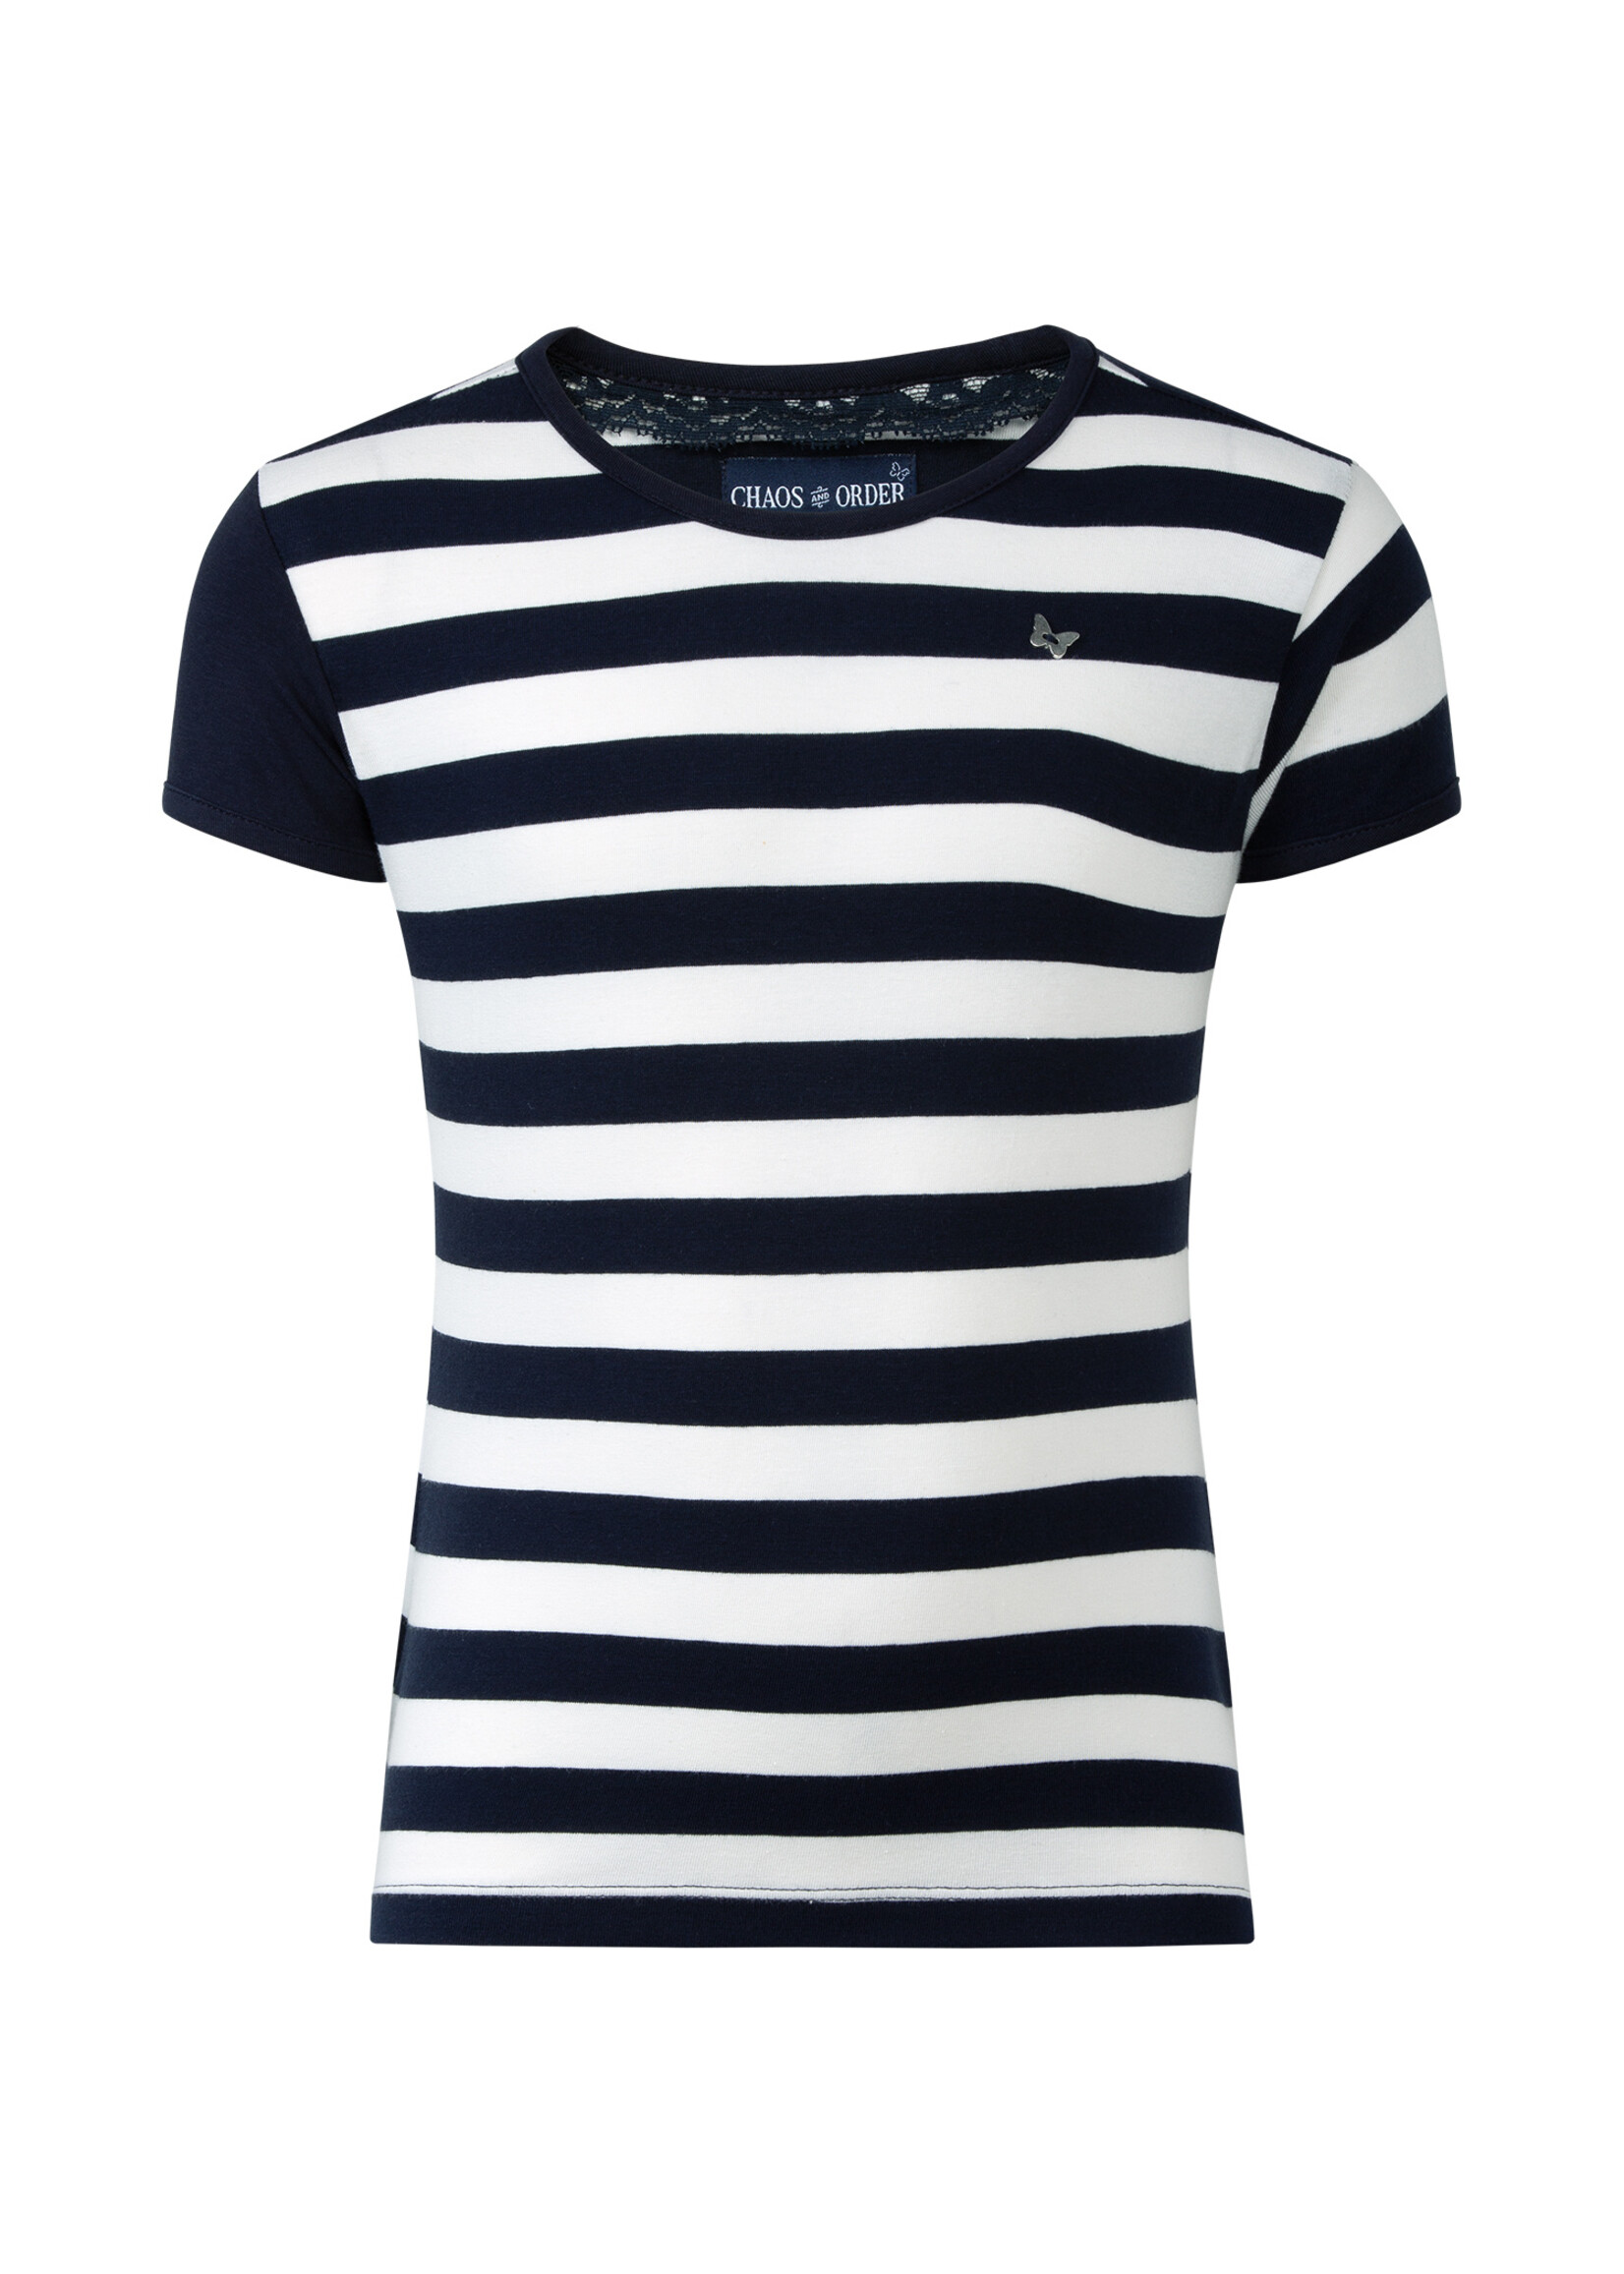 T-shirt Roxy blauw wit streep